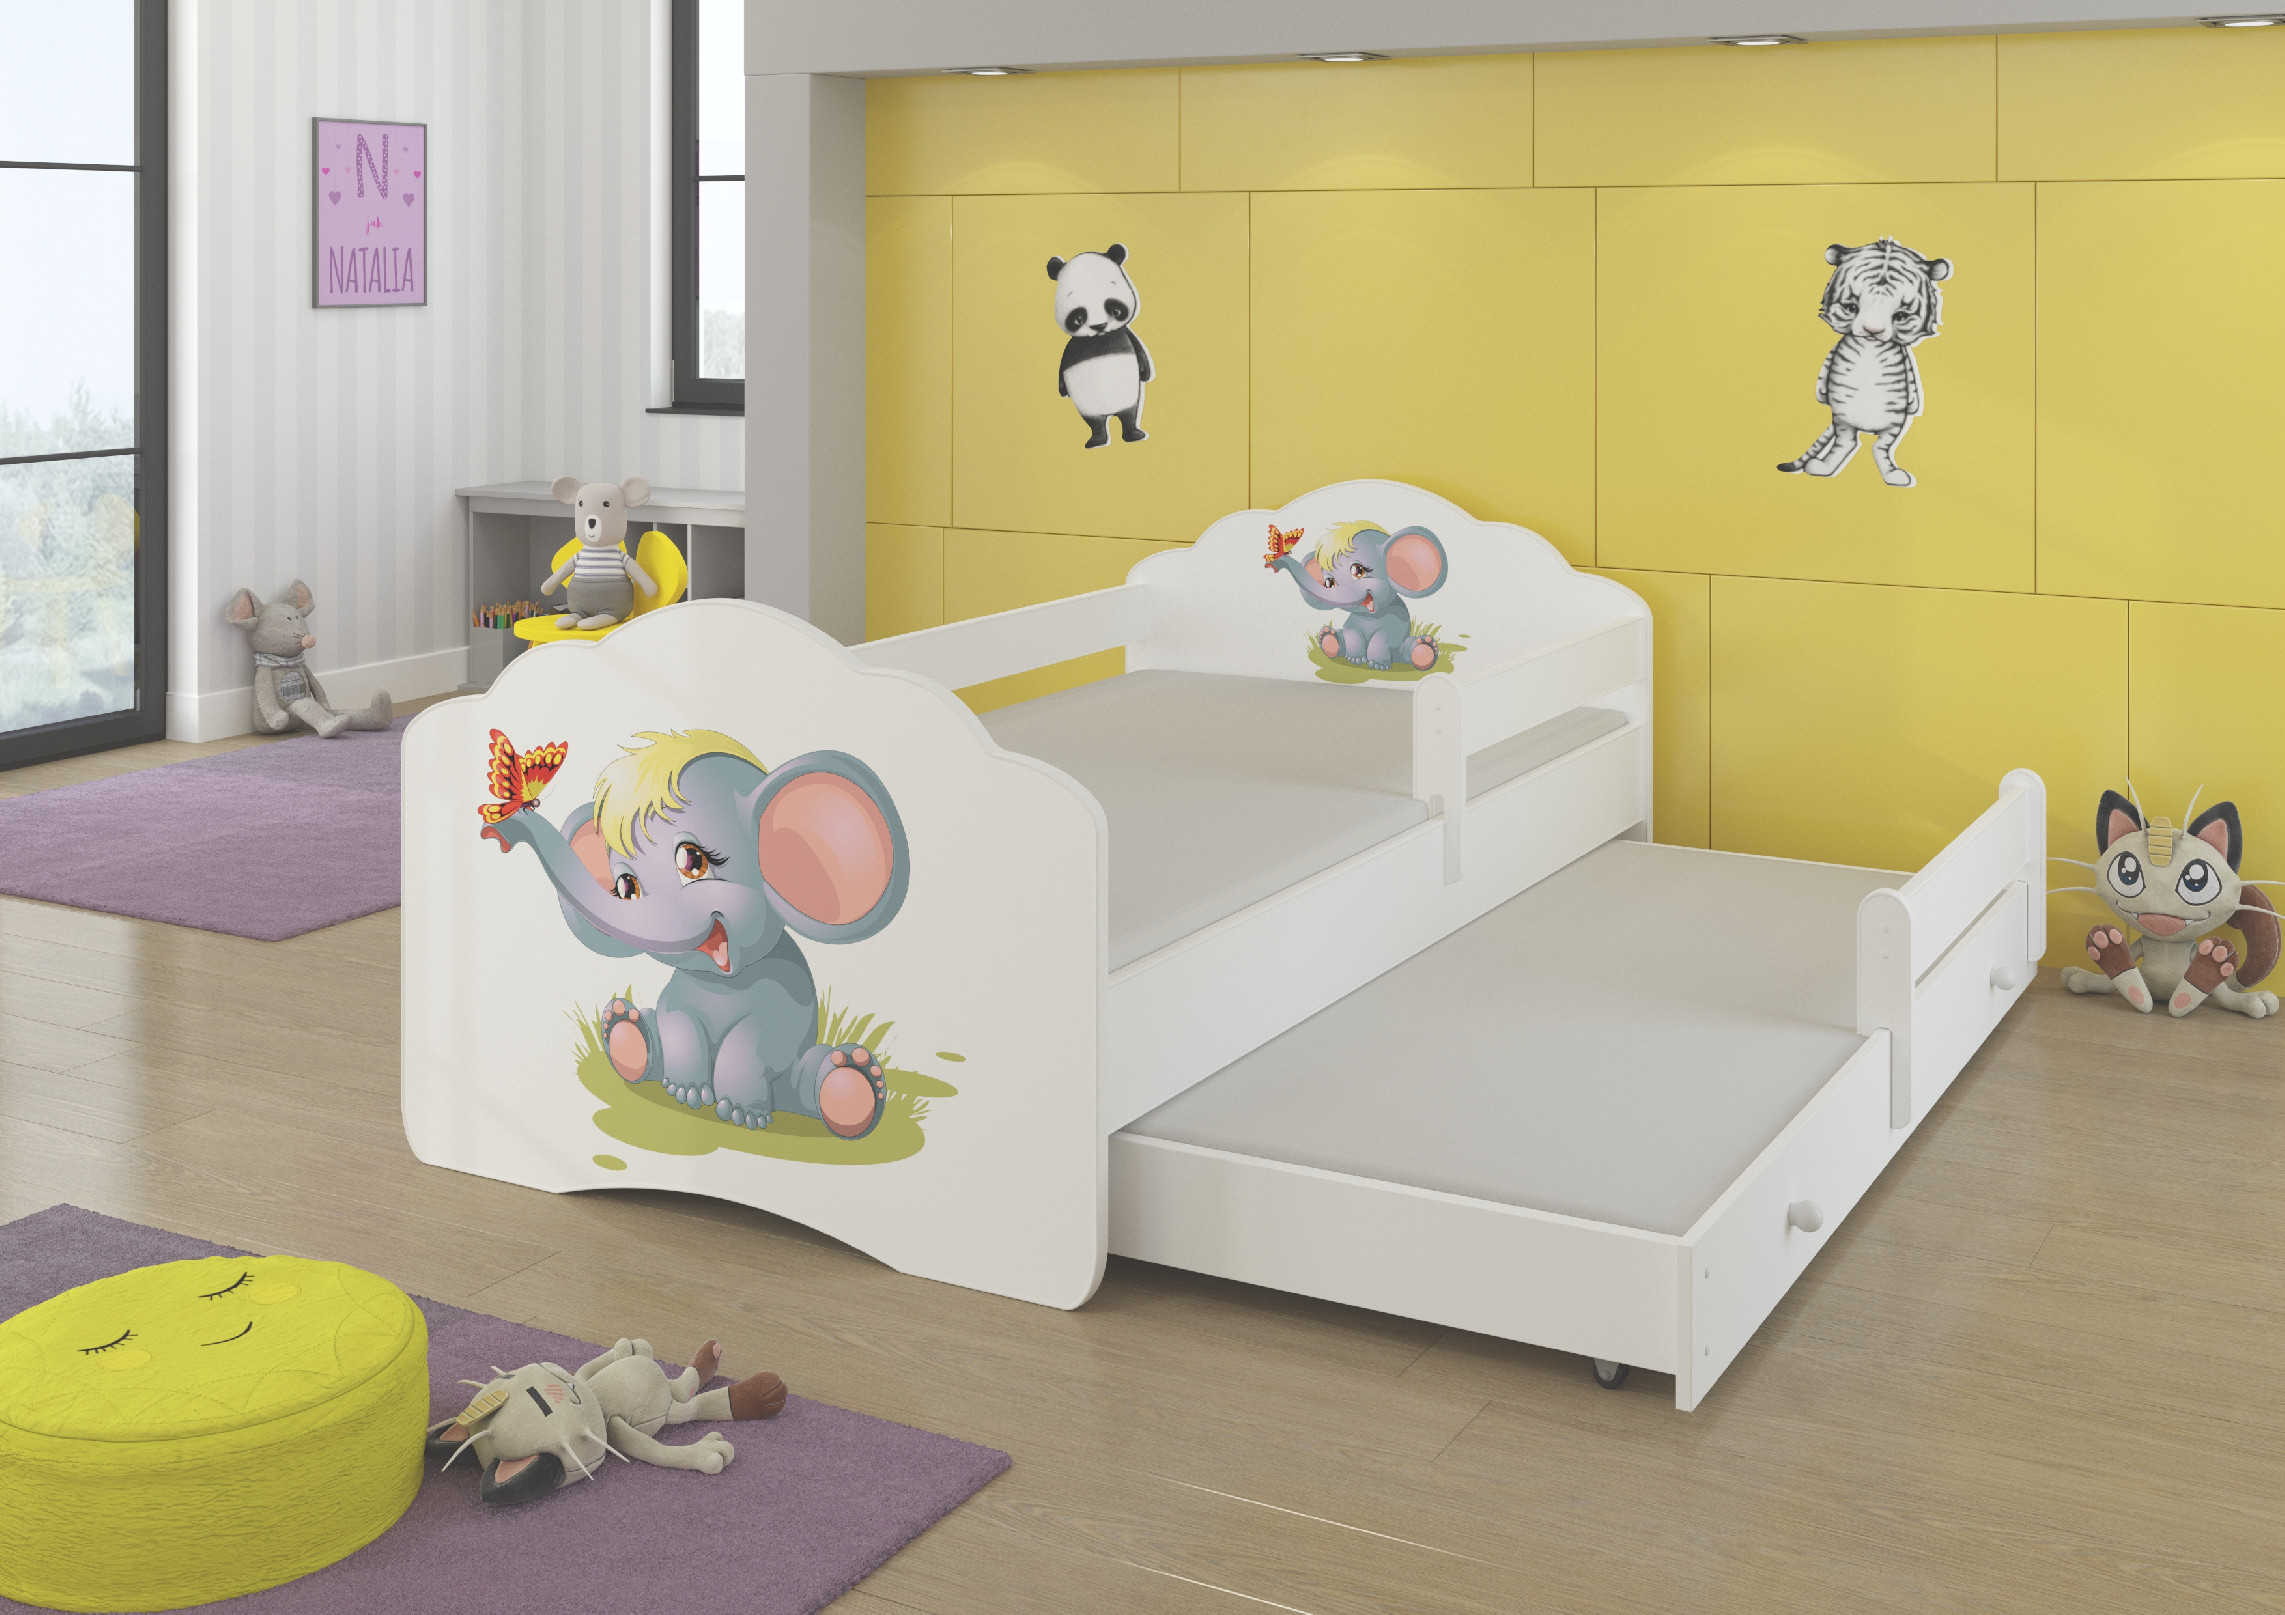 Dětská postel s obrázky - čelo Casimo II bar Rozměr: 160 x 80 cm, Obrázek: Slůně